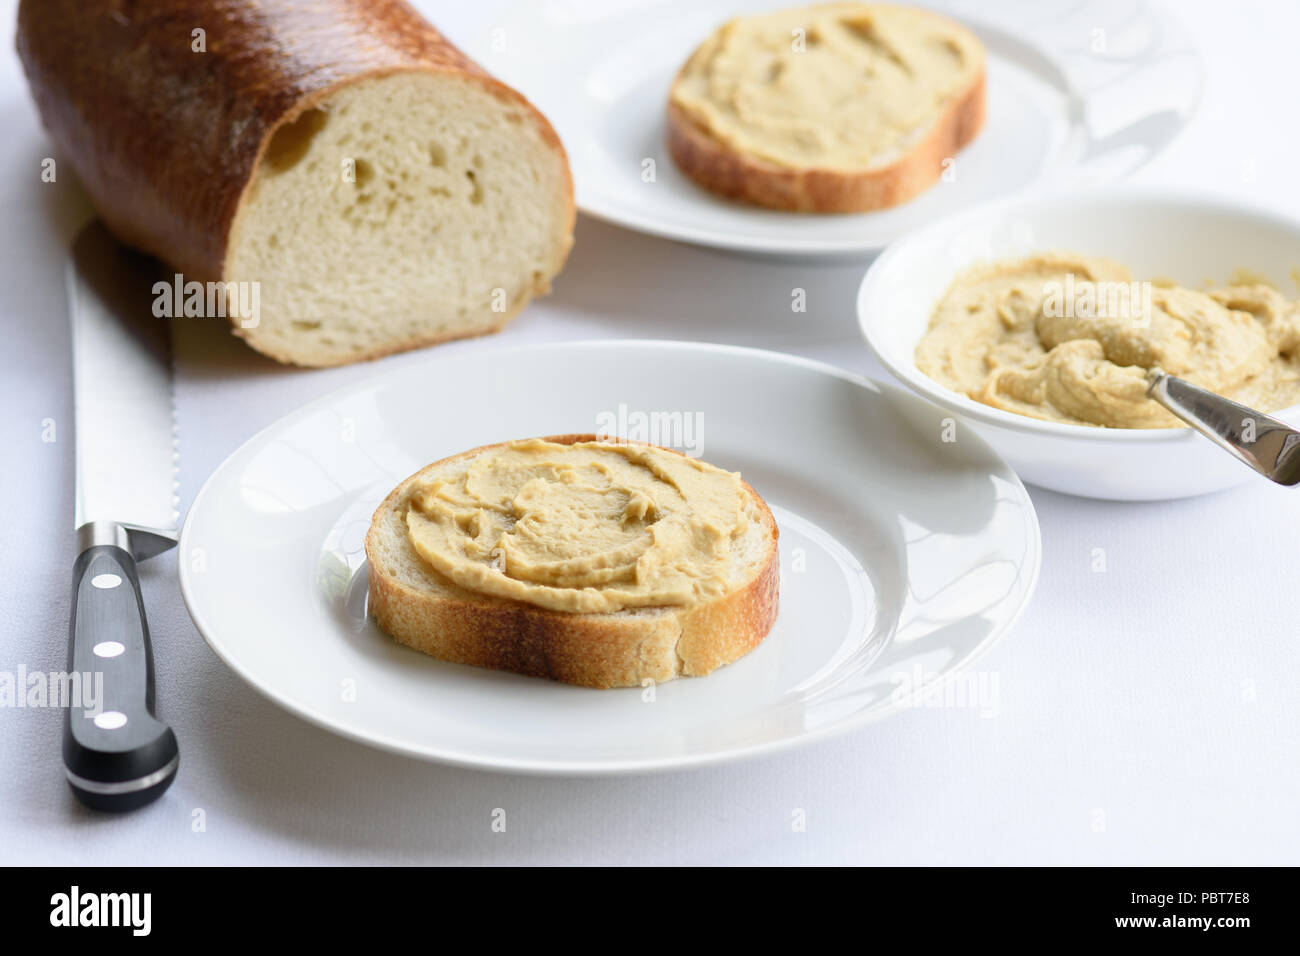 Tranches de pain au levain surmontée d'hummus Banque D'Images